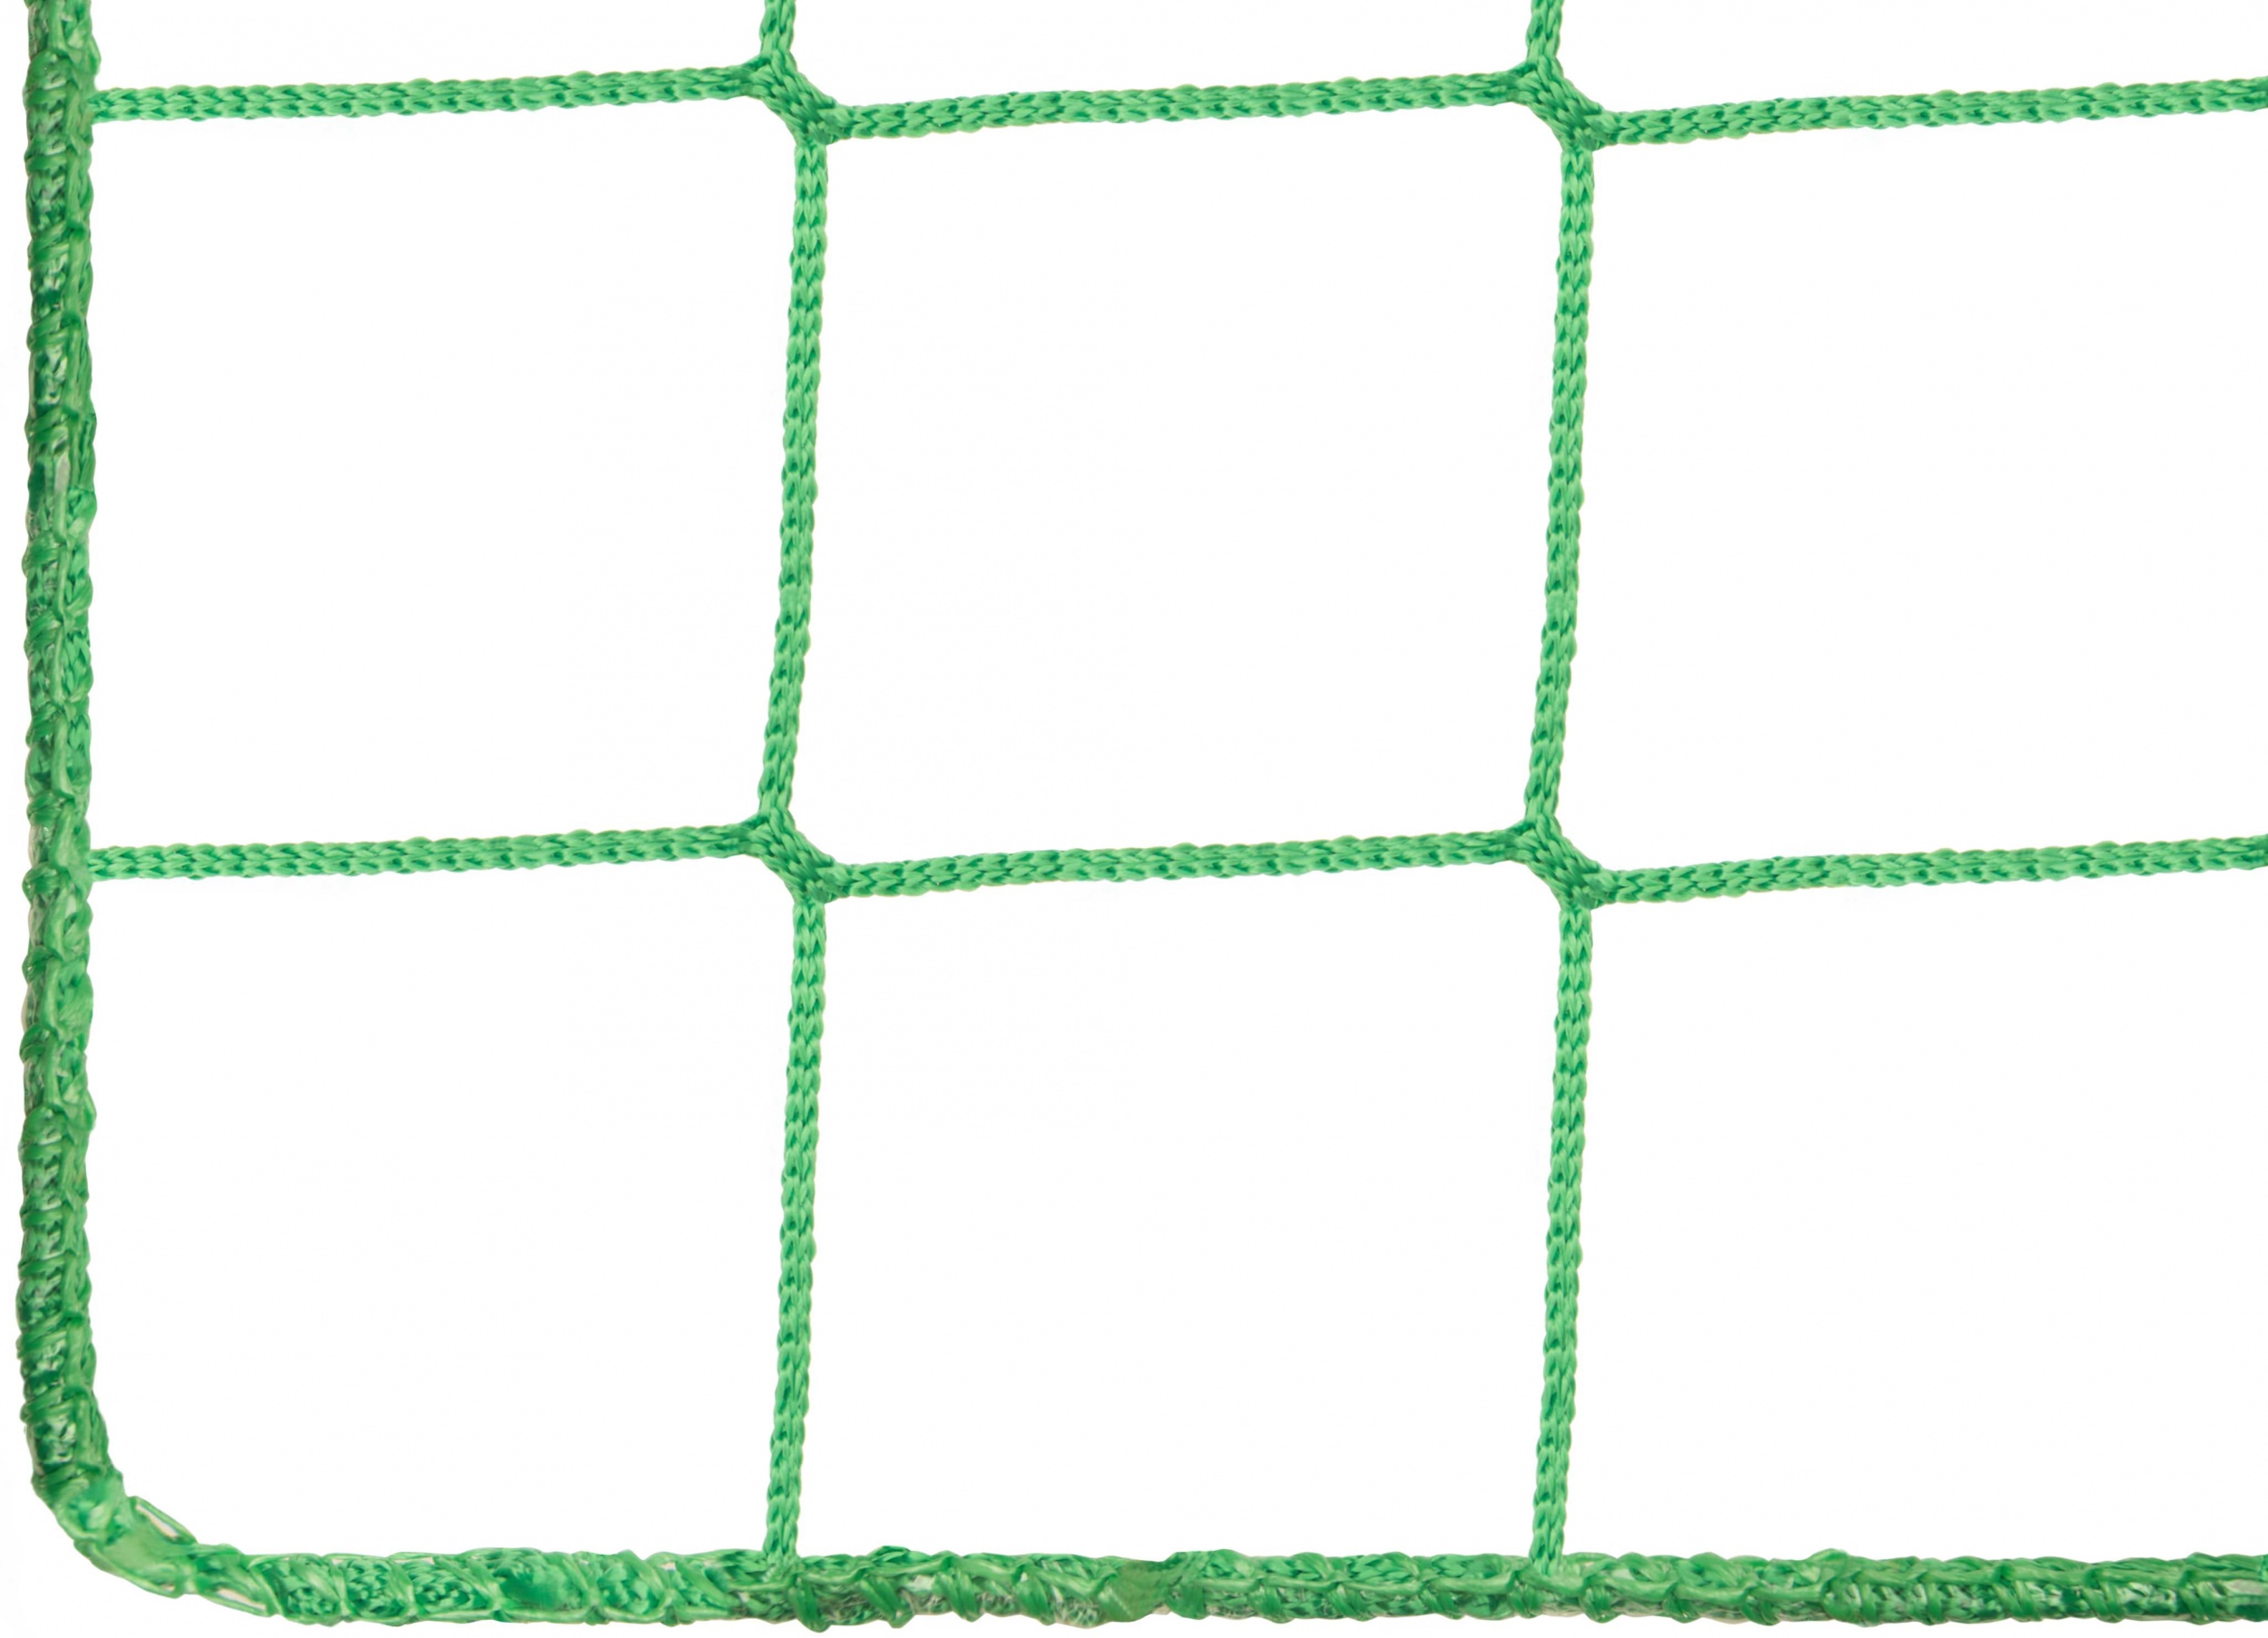 Ballfangnetz  2,00 m x 50 m  oliv  Maschenweite 5 cm  Ballnetz Fangnetz 